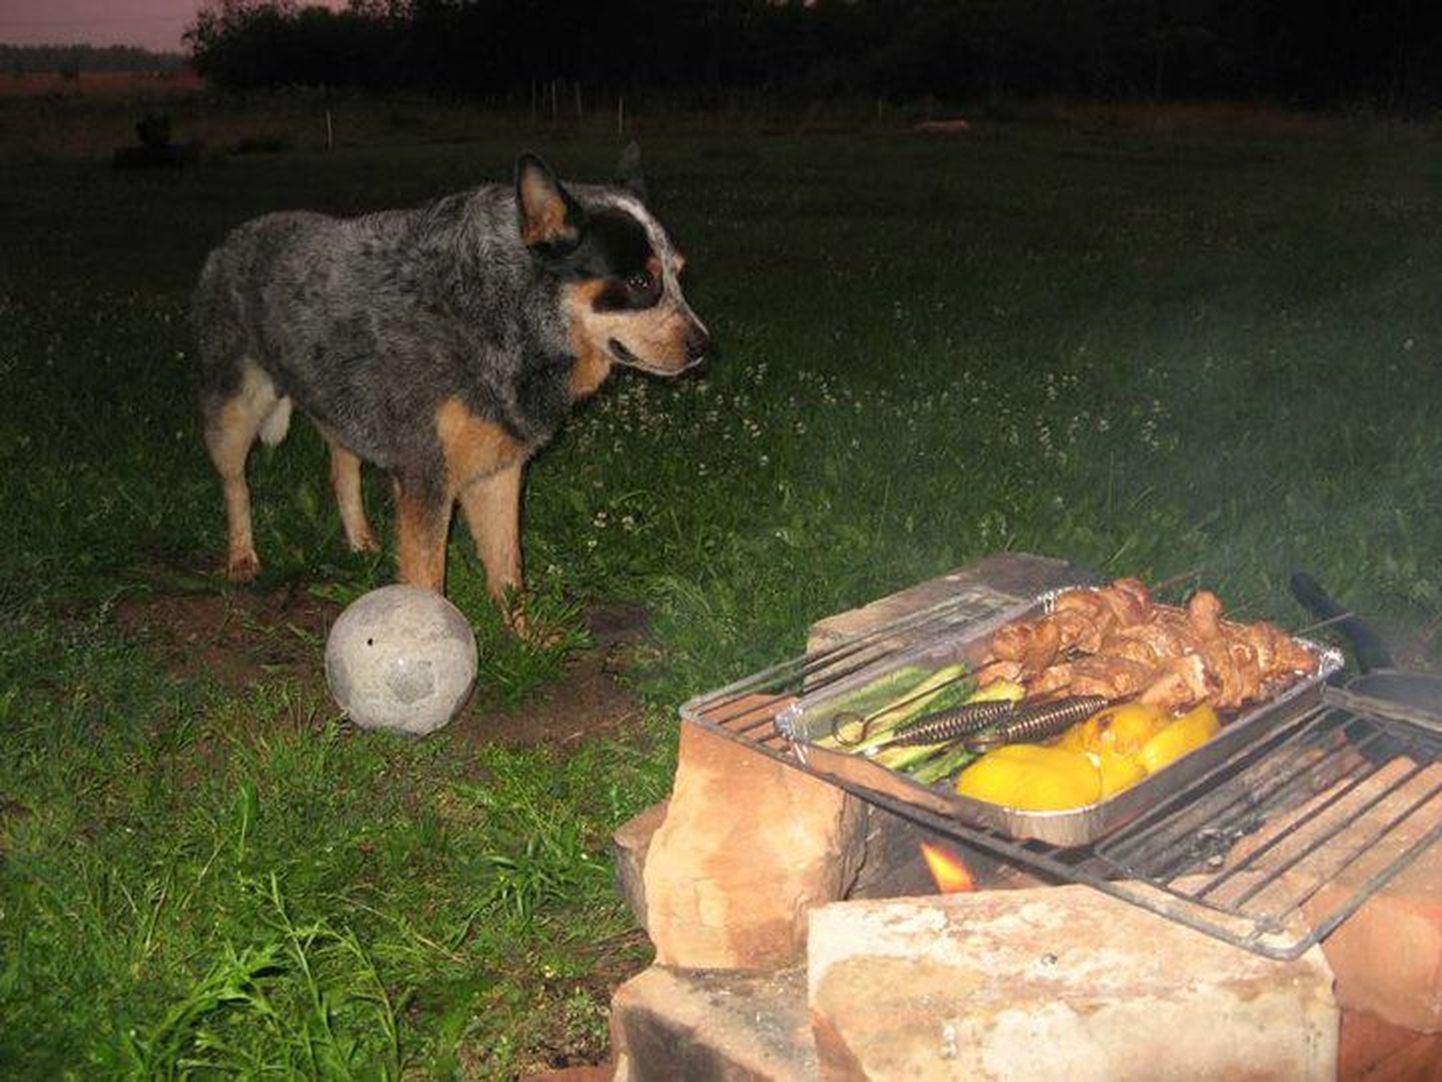 Hea kasvatus: üksi grill-liha valvesse jäetud austraalia karjakoer Ridiradiralla vesistab küll suud, aga hüva kraami ei puutu